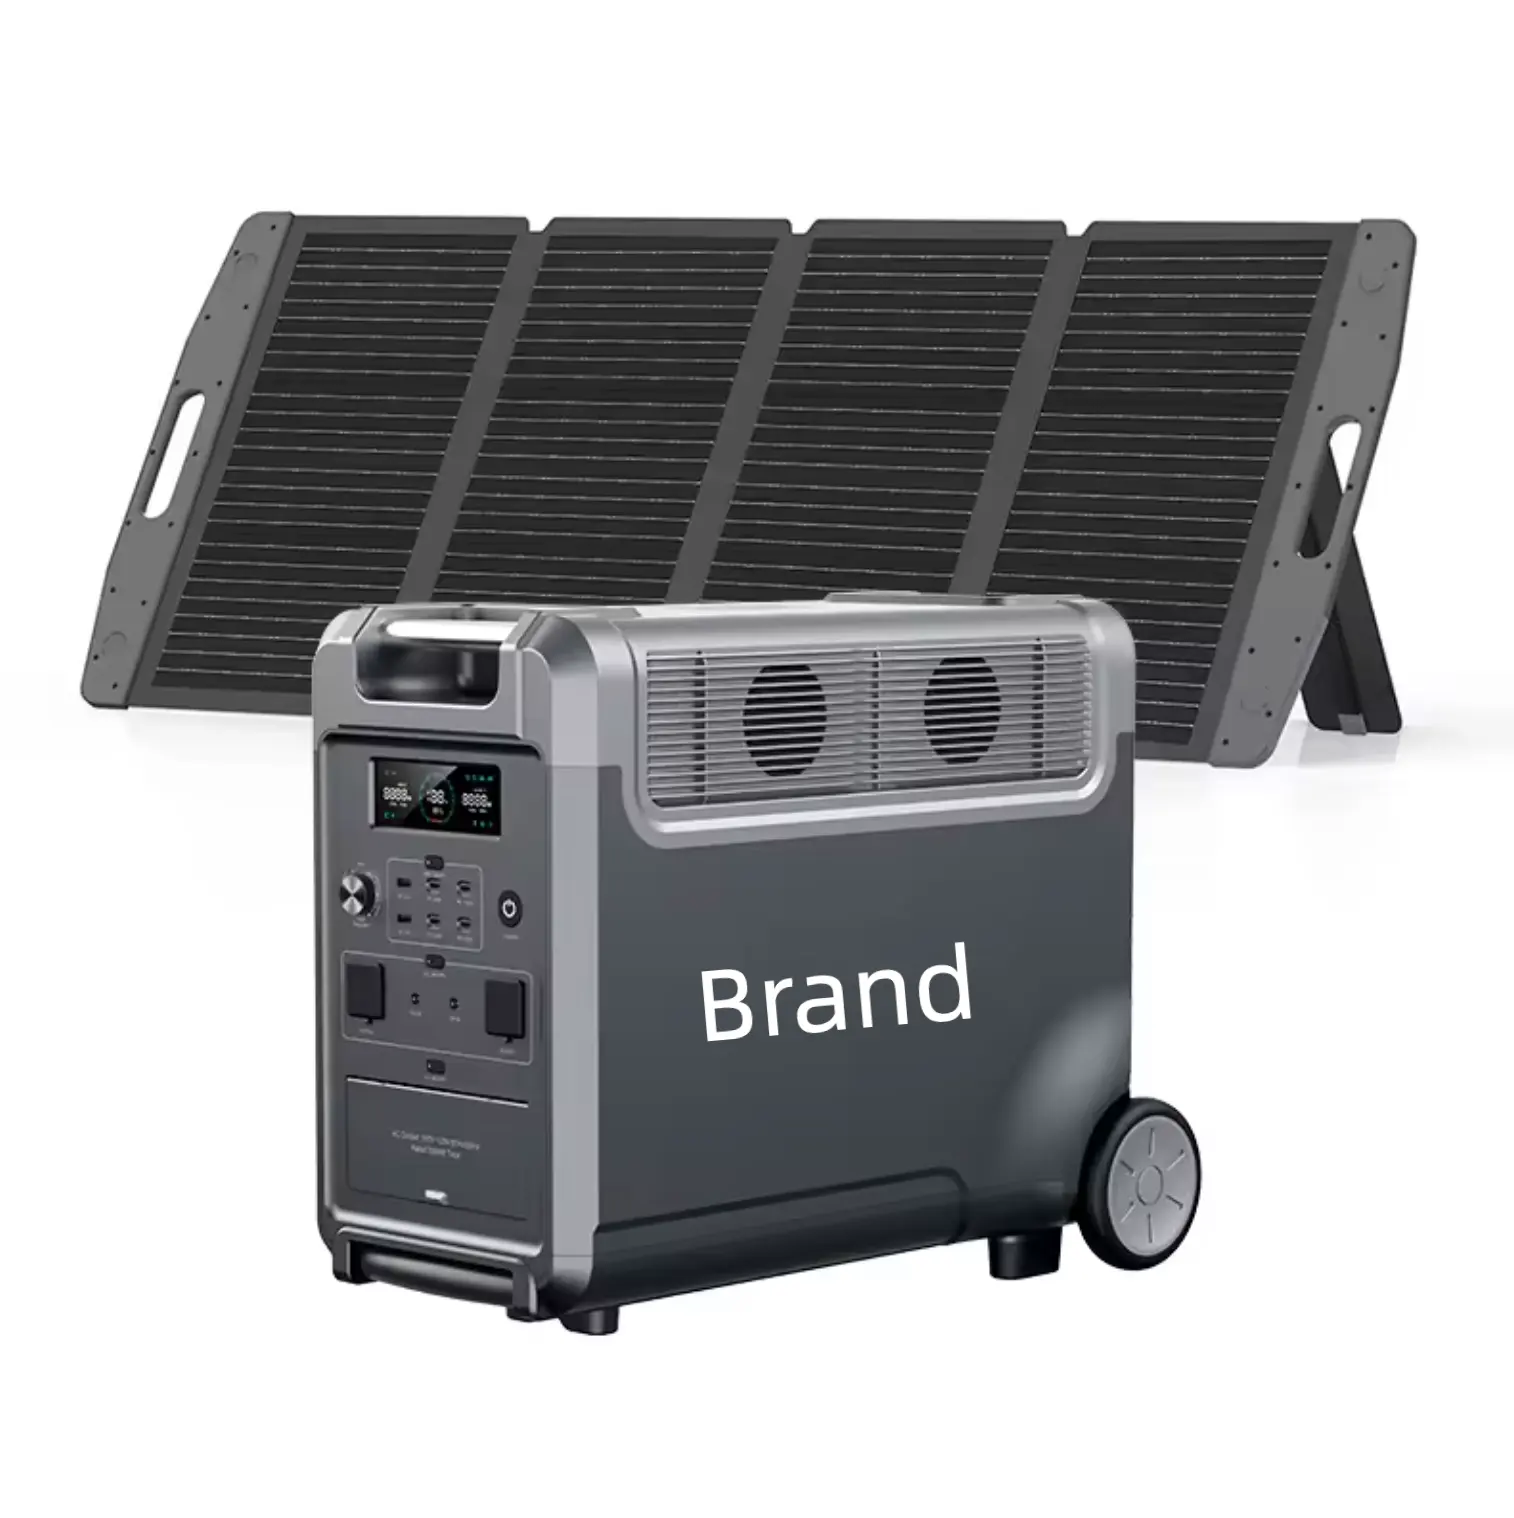 Estación de energía portátil Panel solar Fuente de alimentación del coche MPPT Linterna de onda sinusoidal pura Batería externa Encendedor de cigarros remoto